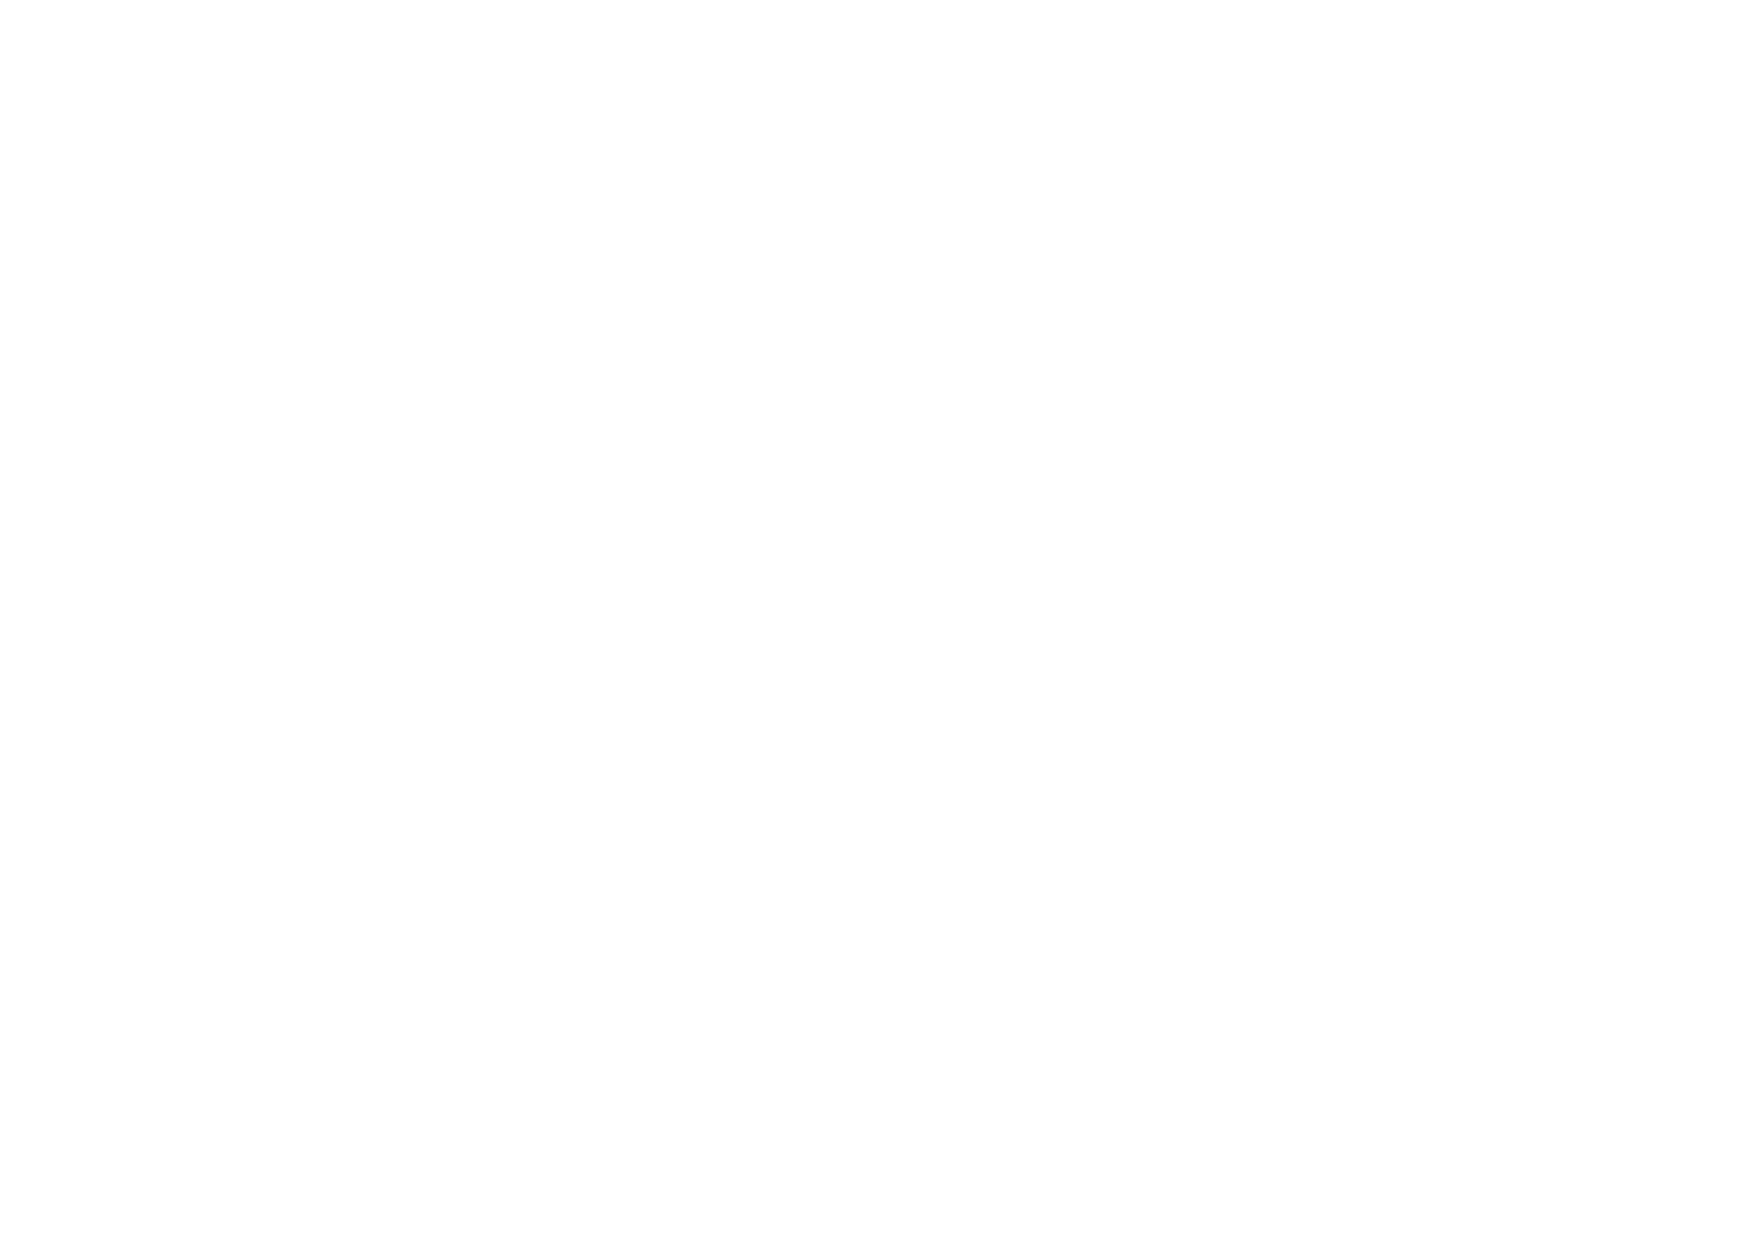 Arno van Kessel